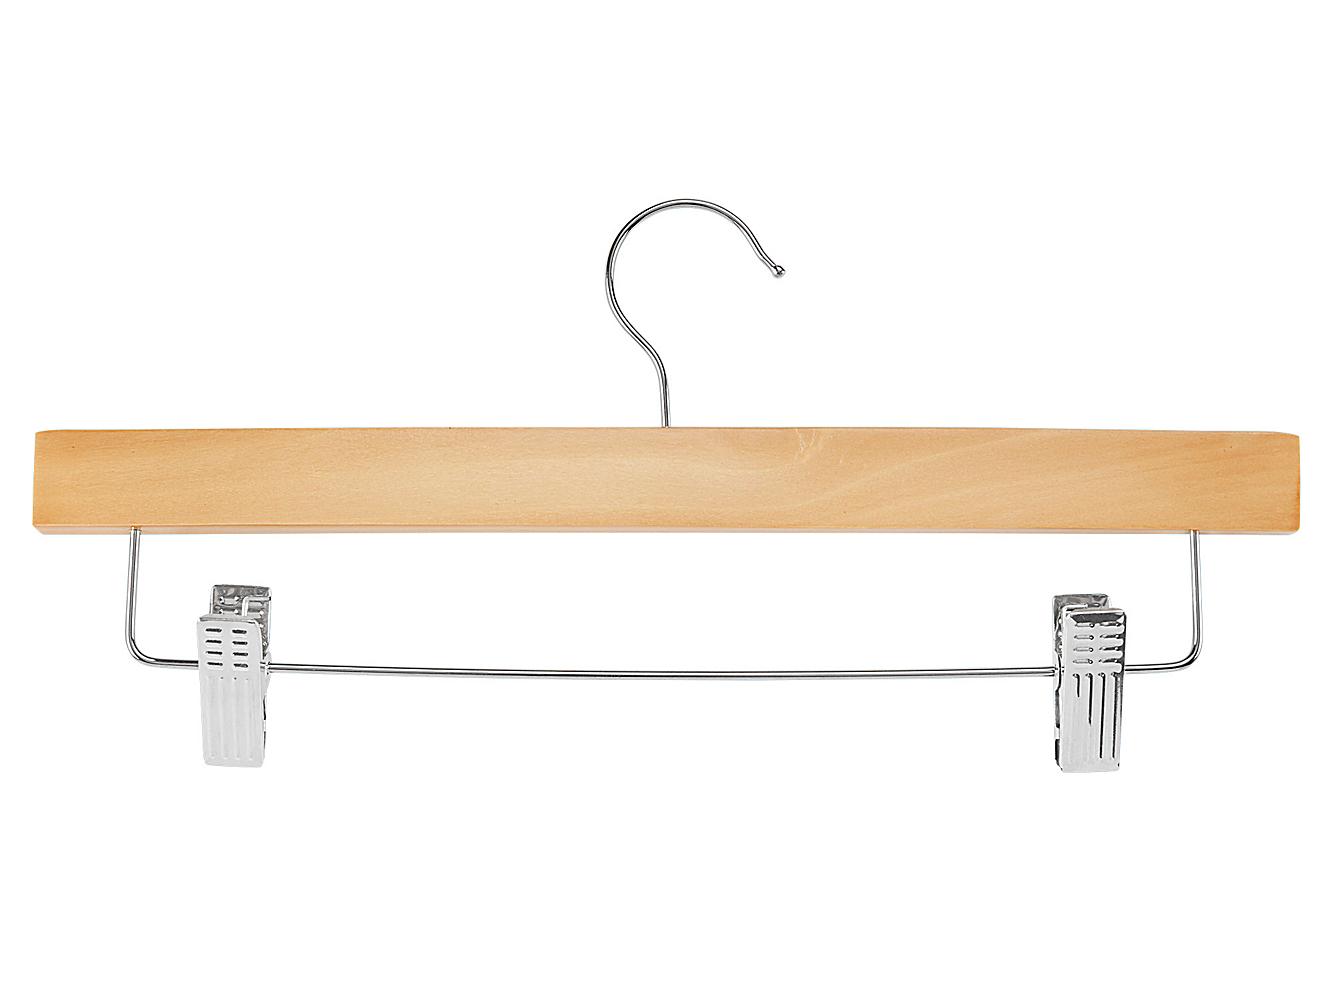 Wood Hangers - Adjustable Clips, Natural S-21710NAT - Uline